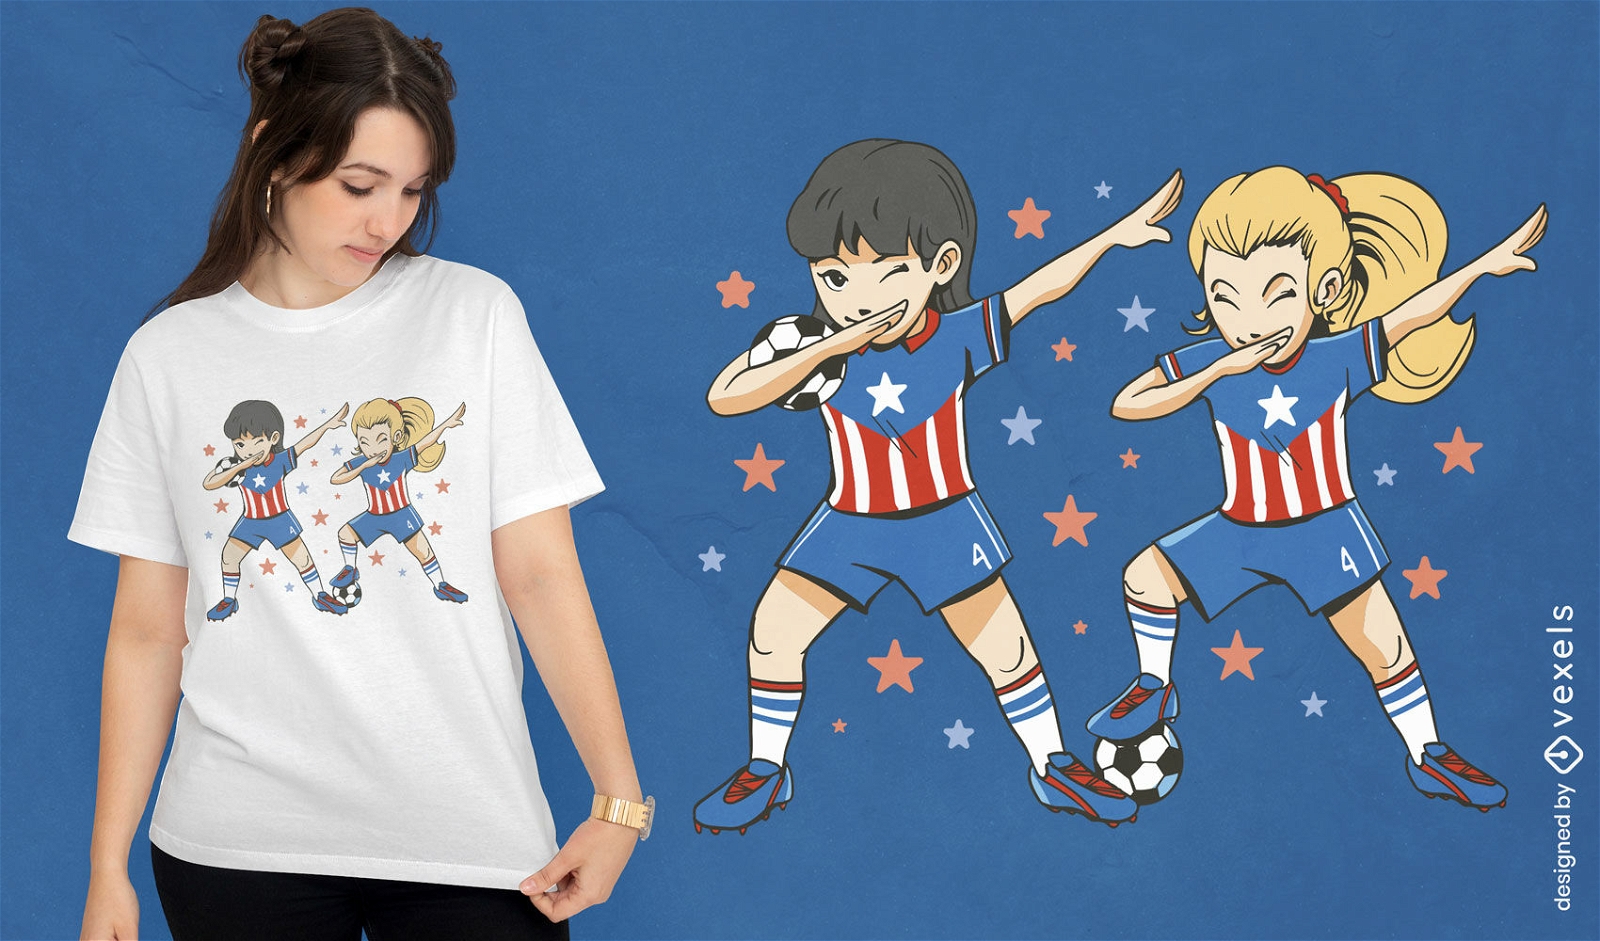 T-Shirt-Design mit Fu?ball-Spielerinnen